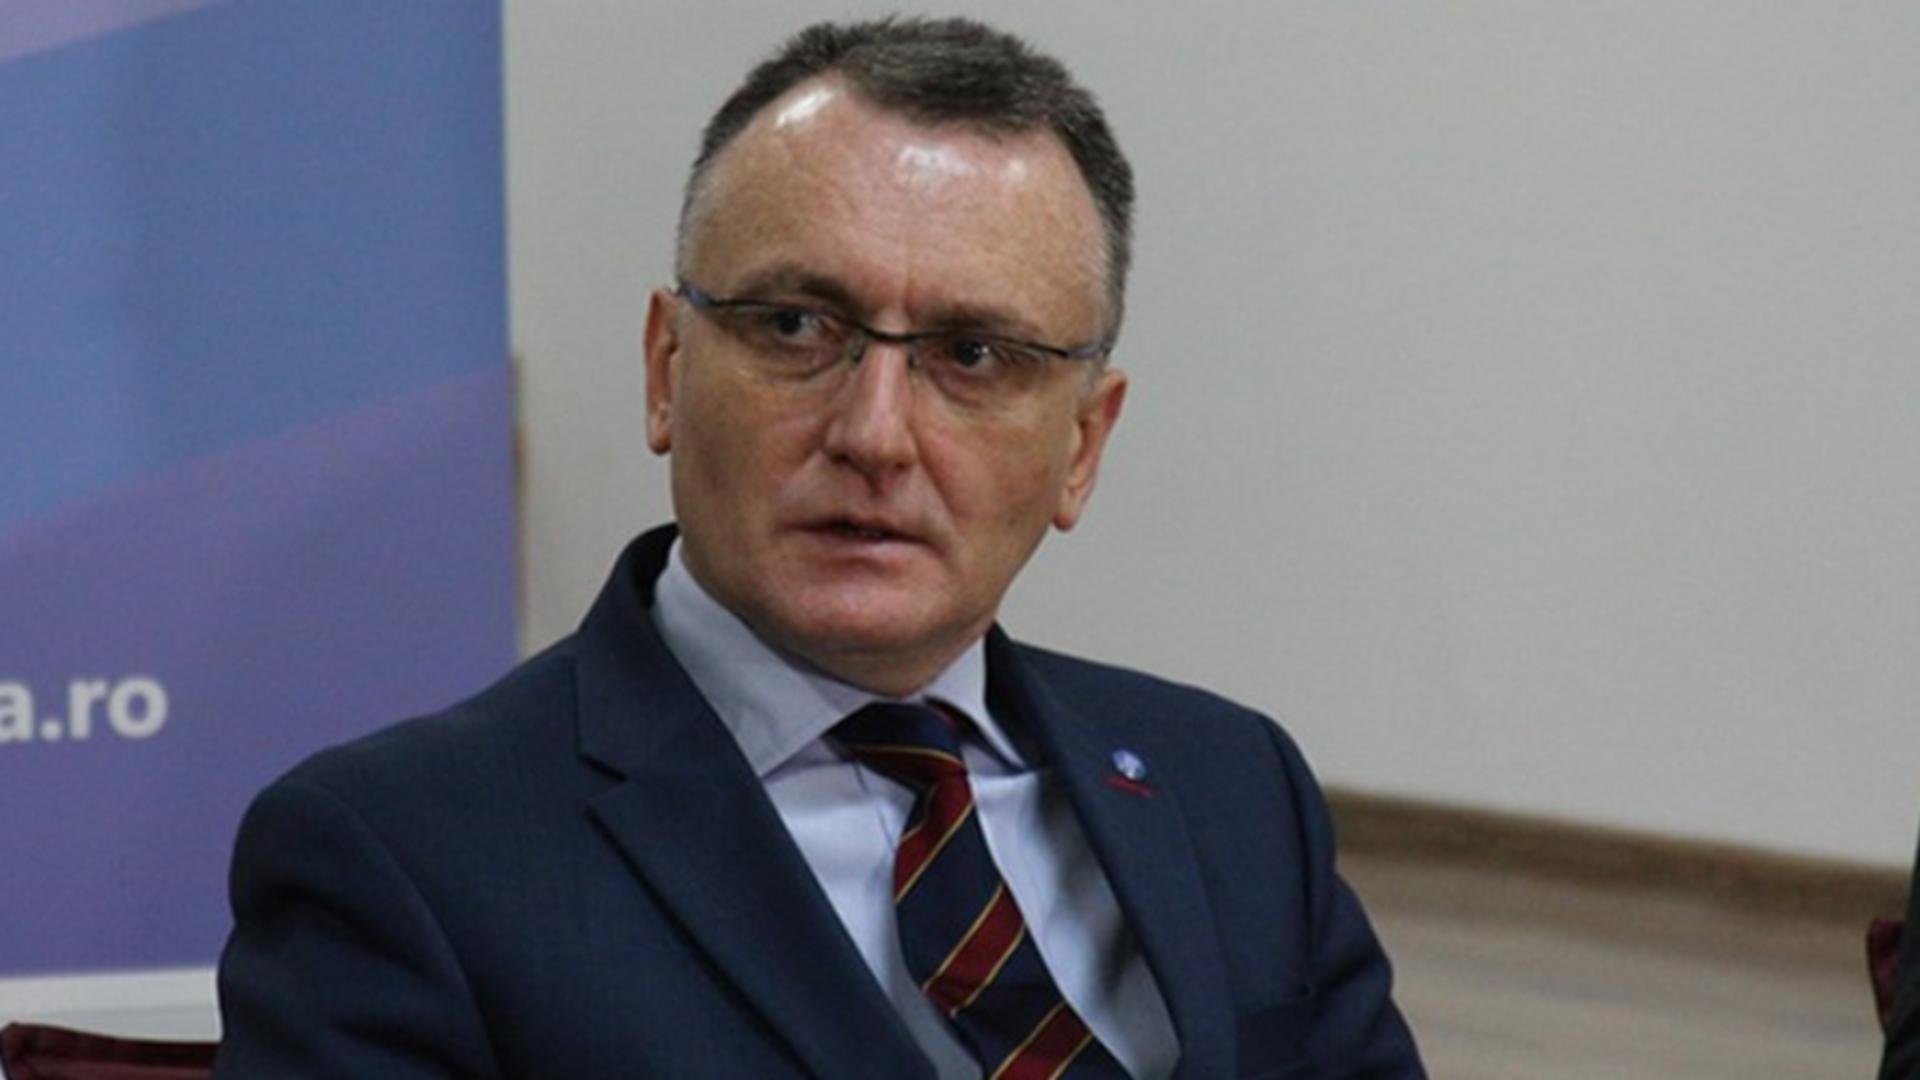  Ministrul Sorin Cîmpeanu susține că o comisie a constatat că teza sa de doctorat nu este plagiată, dar nu spune care sunt membrii comisiei